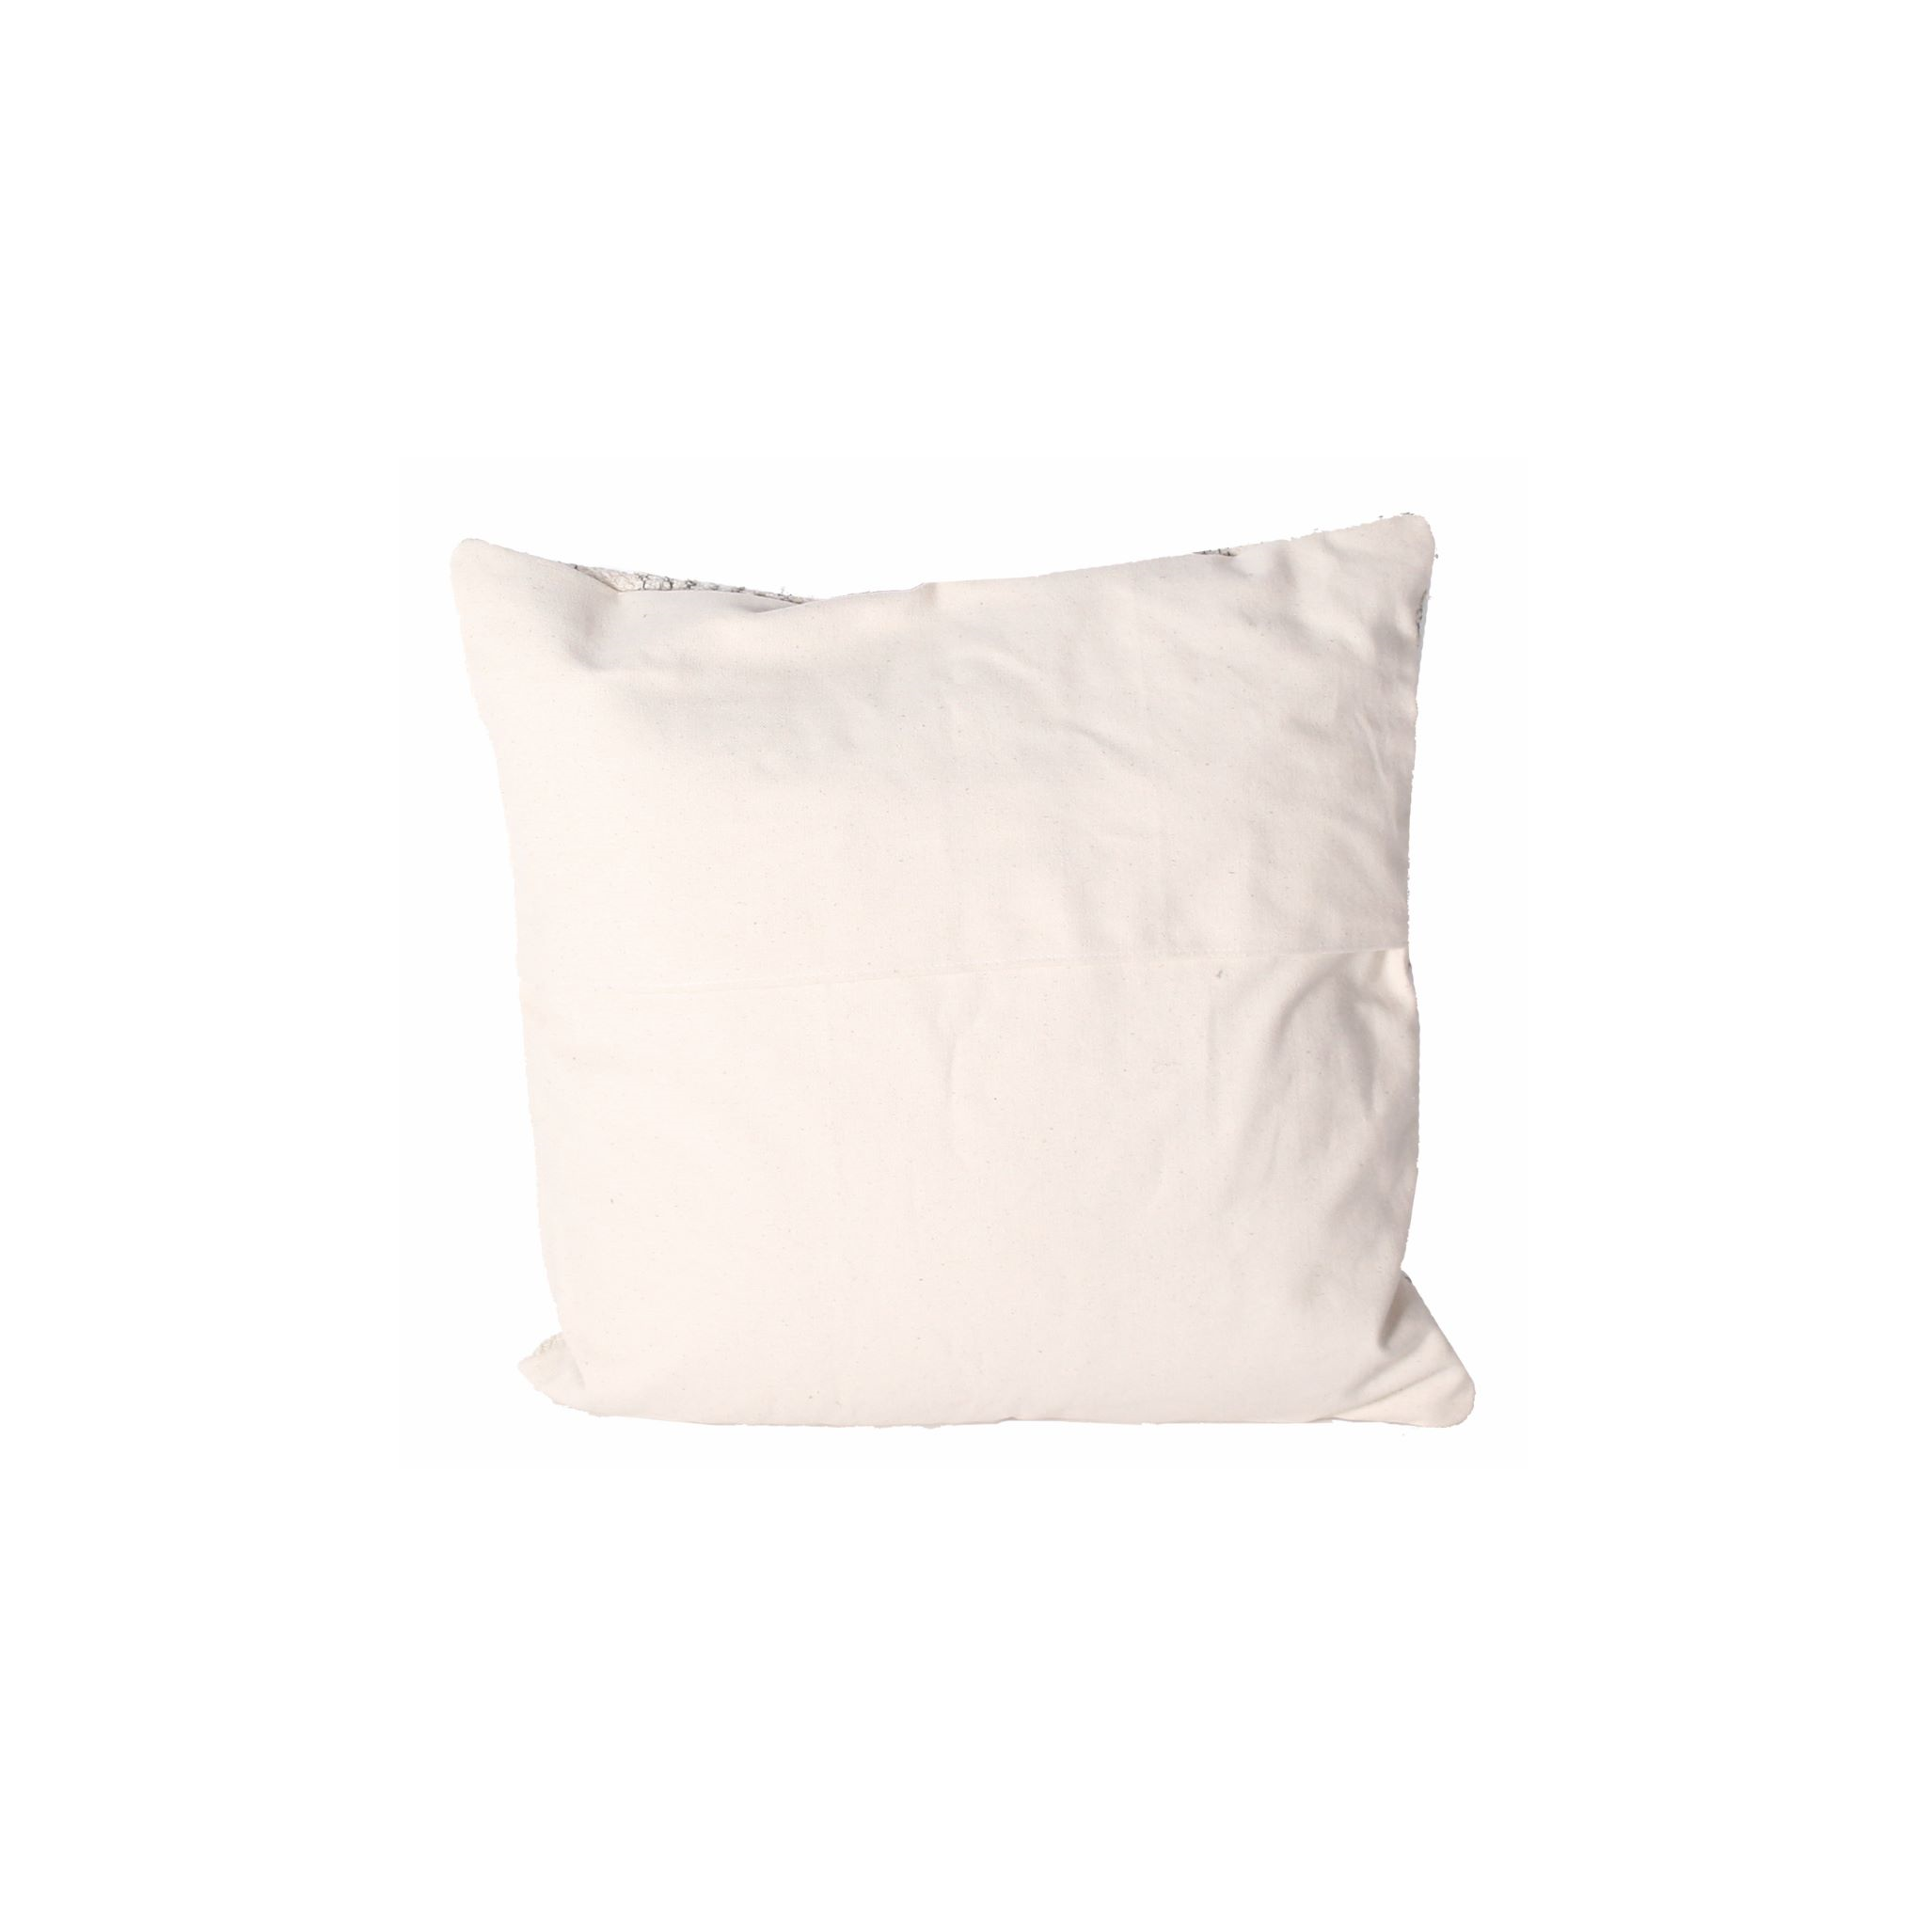 Velvet cushion cover moroccan